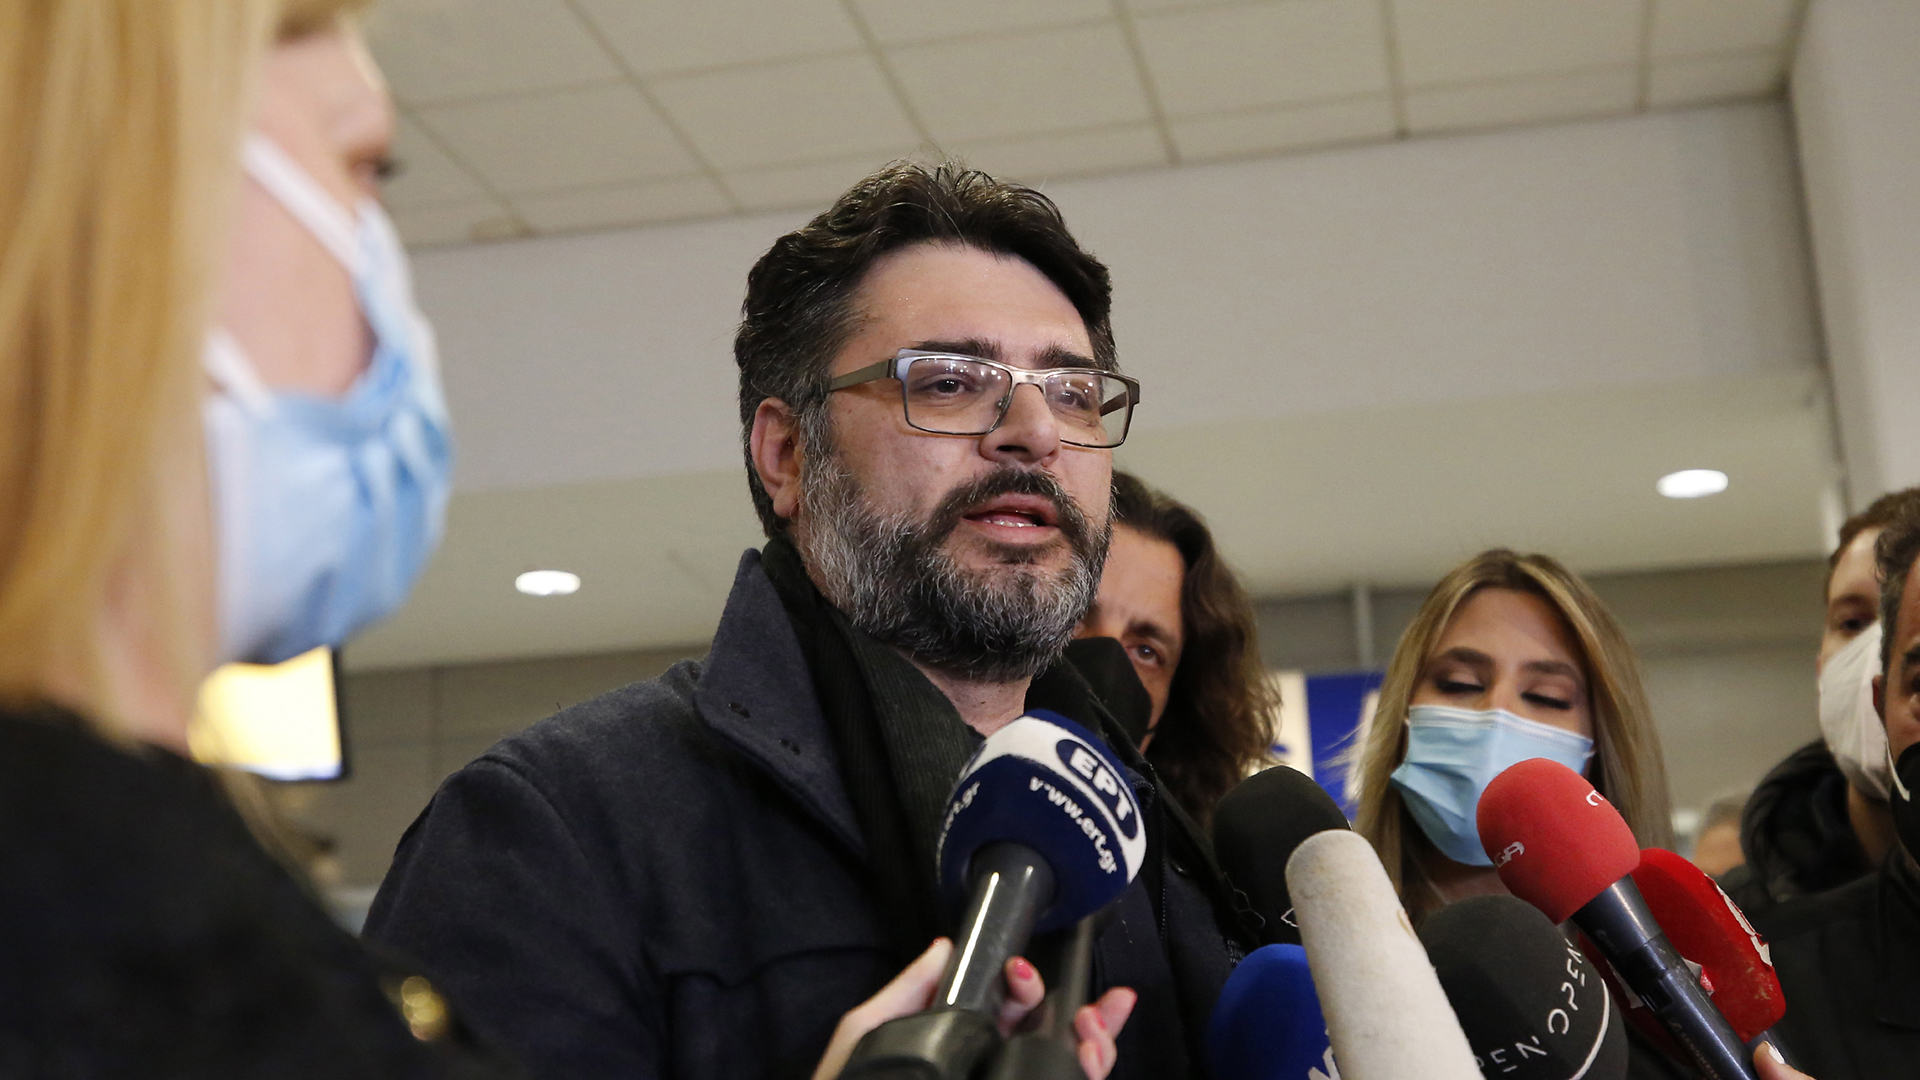  Manolis Androulakis spricht mit den Medien nach seiner Ankunft in Spata, Griechenland. | EPA